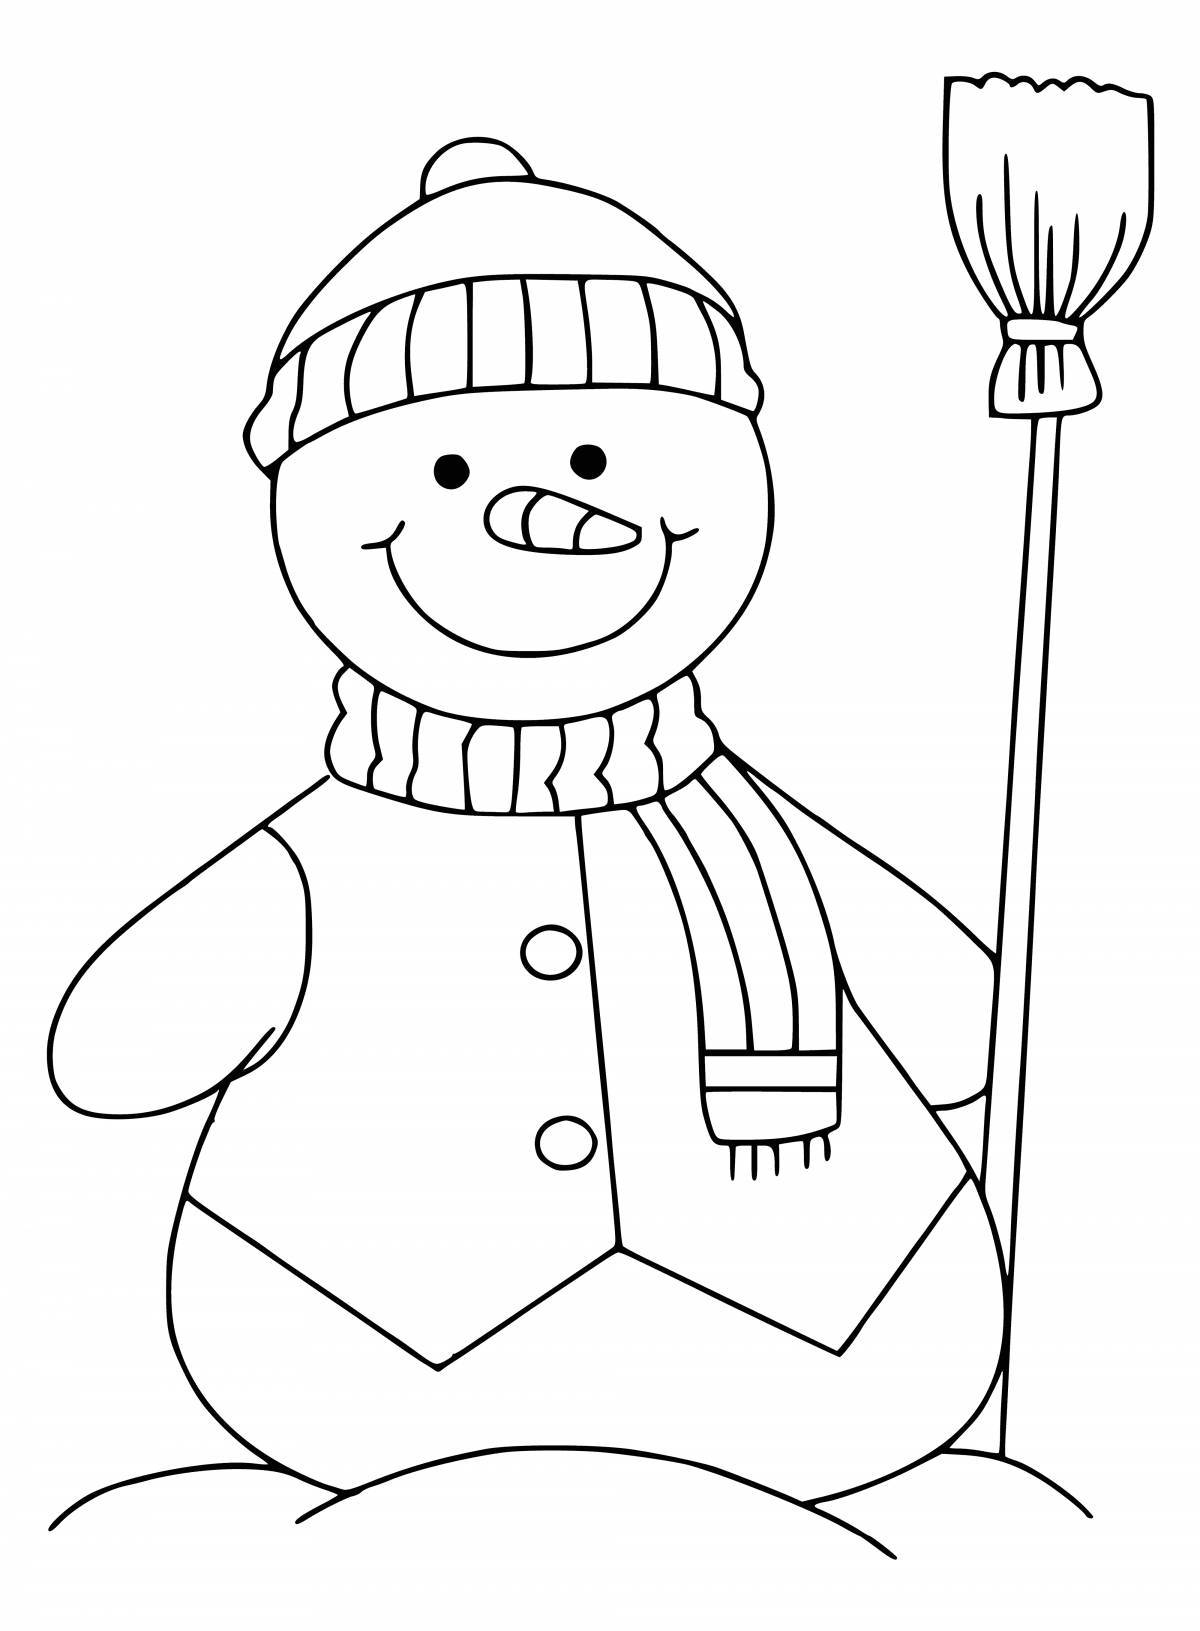 Красочная раскраска снеговик для детей